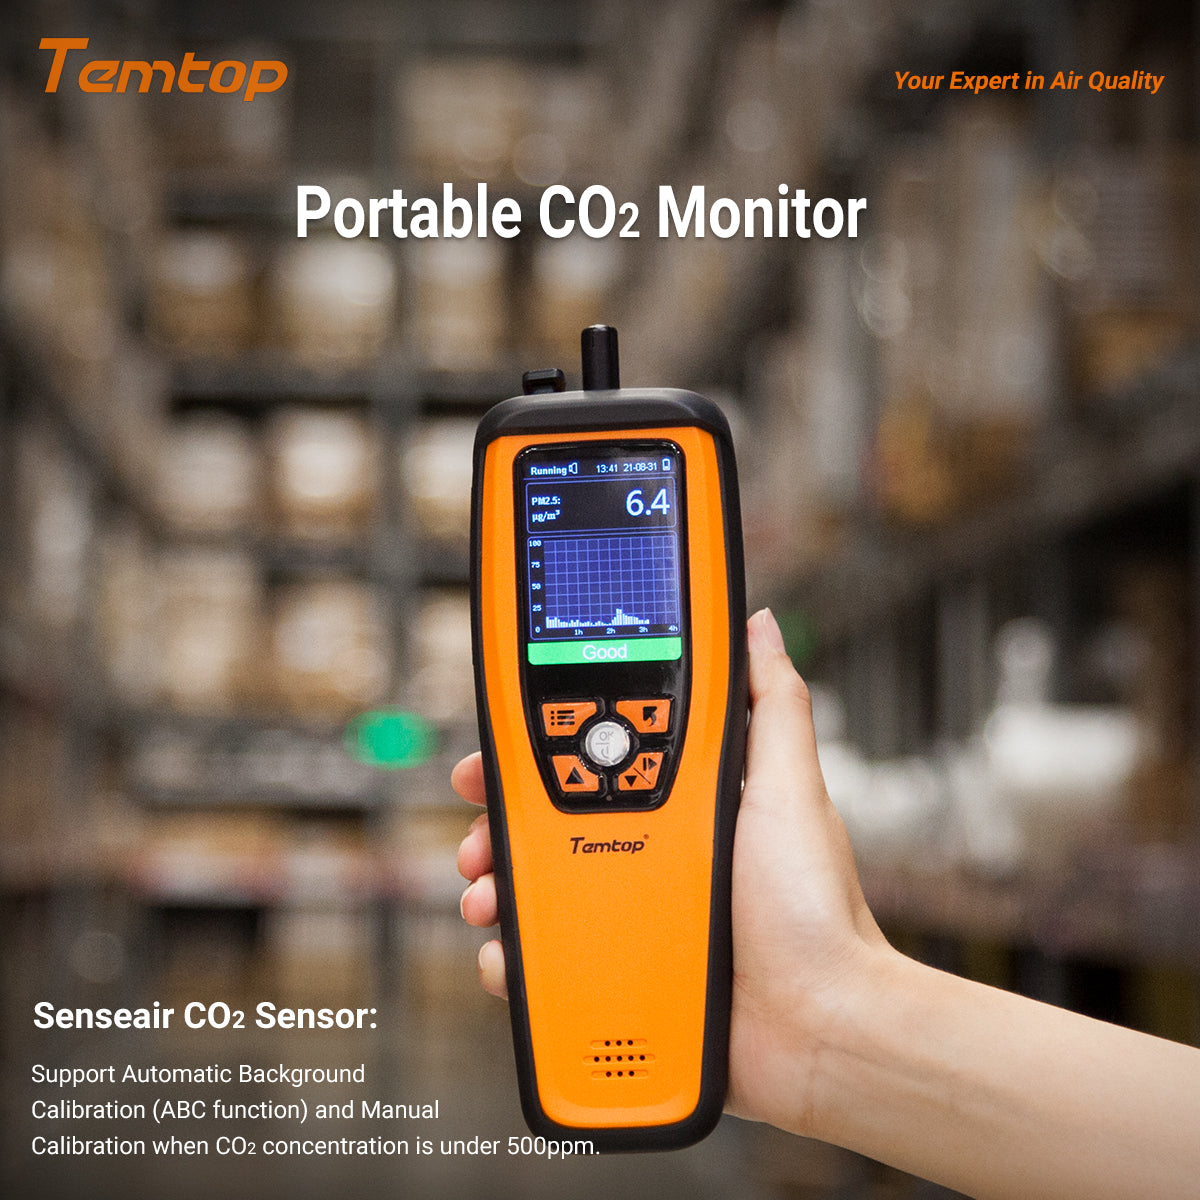 Temtop M2000C 2. CO2-Luftqualitätsmonitor für CO2 PM2,5 PM10-Partikel, Temperatur- und Luftfeuchtigkeitsanzeige, Datenexport